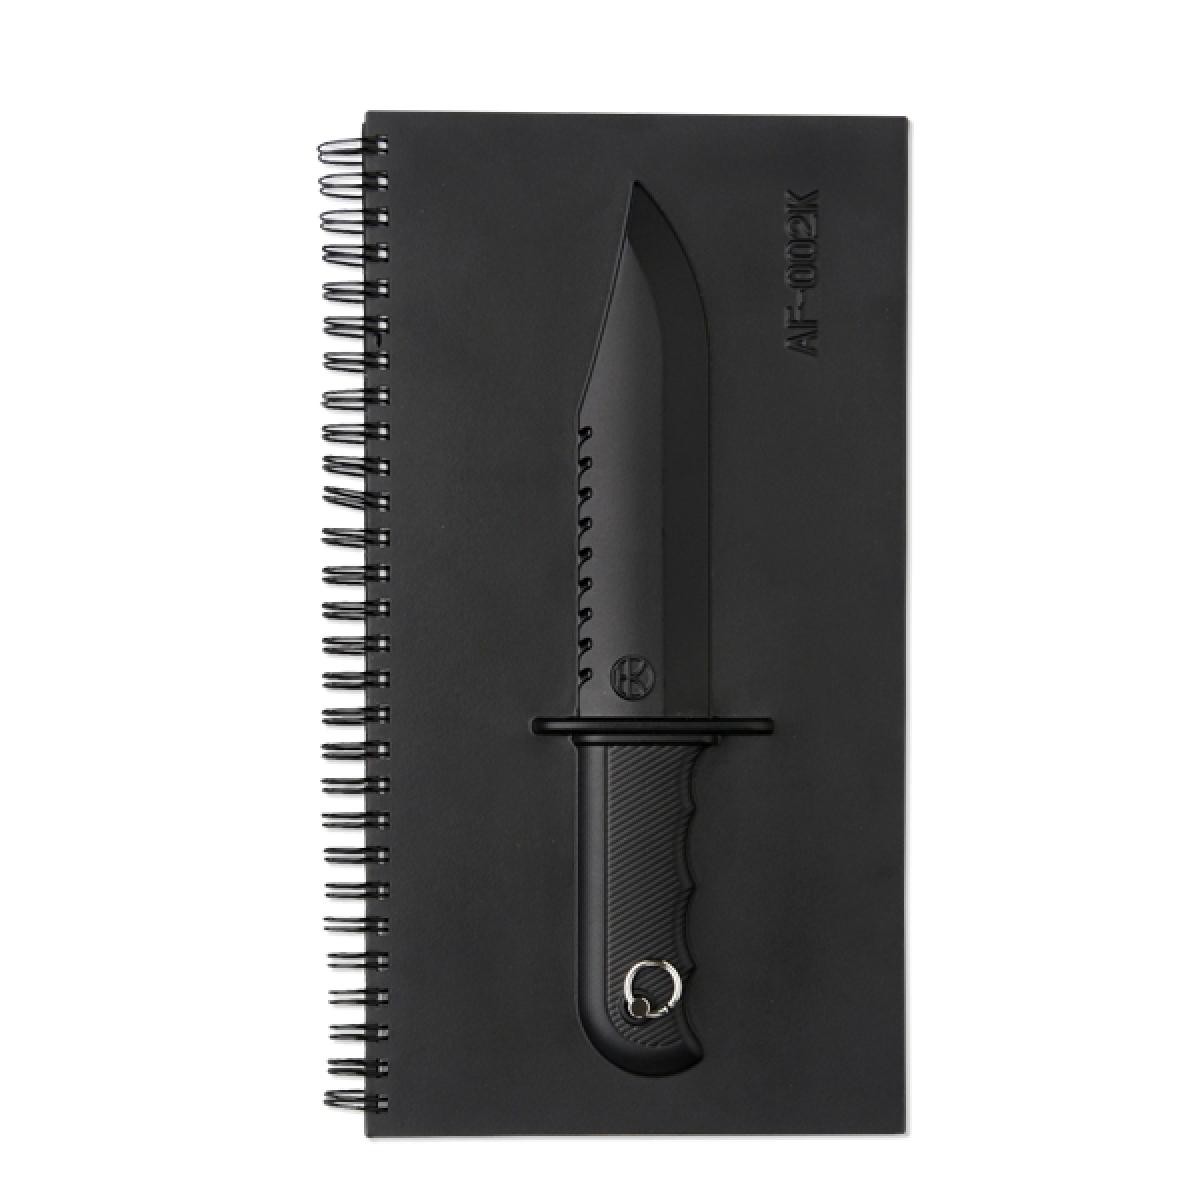 Totalcadeau - Bloc-notes luxe carnet avec un couteau en relief - Objets déco